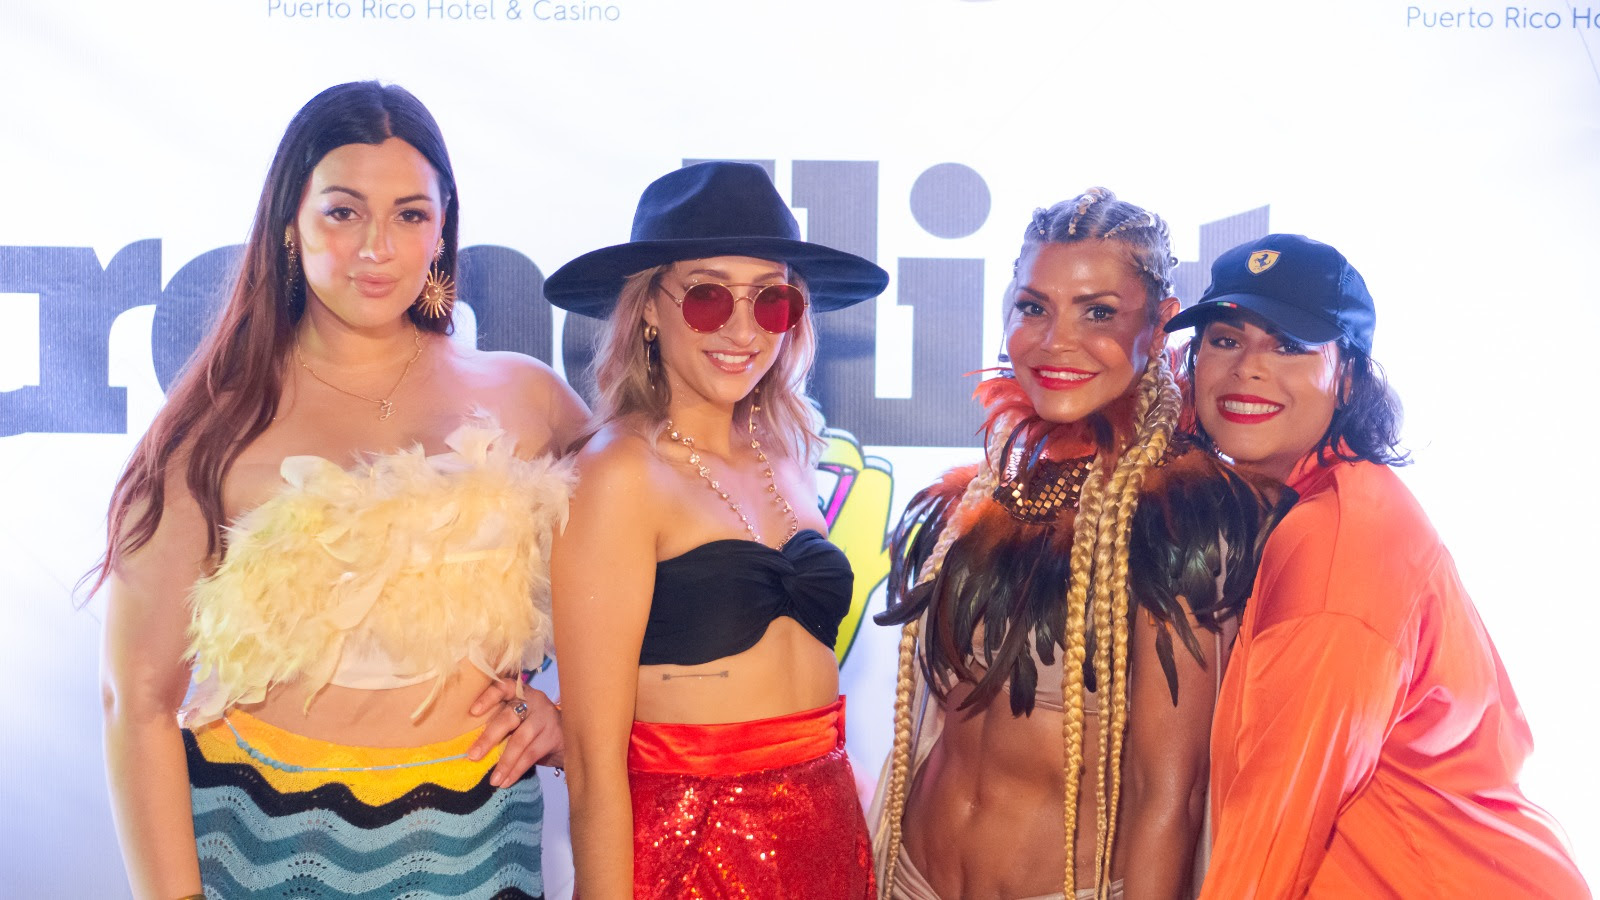 “Trendlist Party” se convirtió en el mejor evento para influencers realizado en Puerto Rico